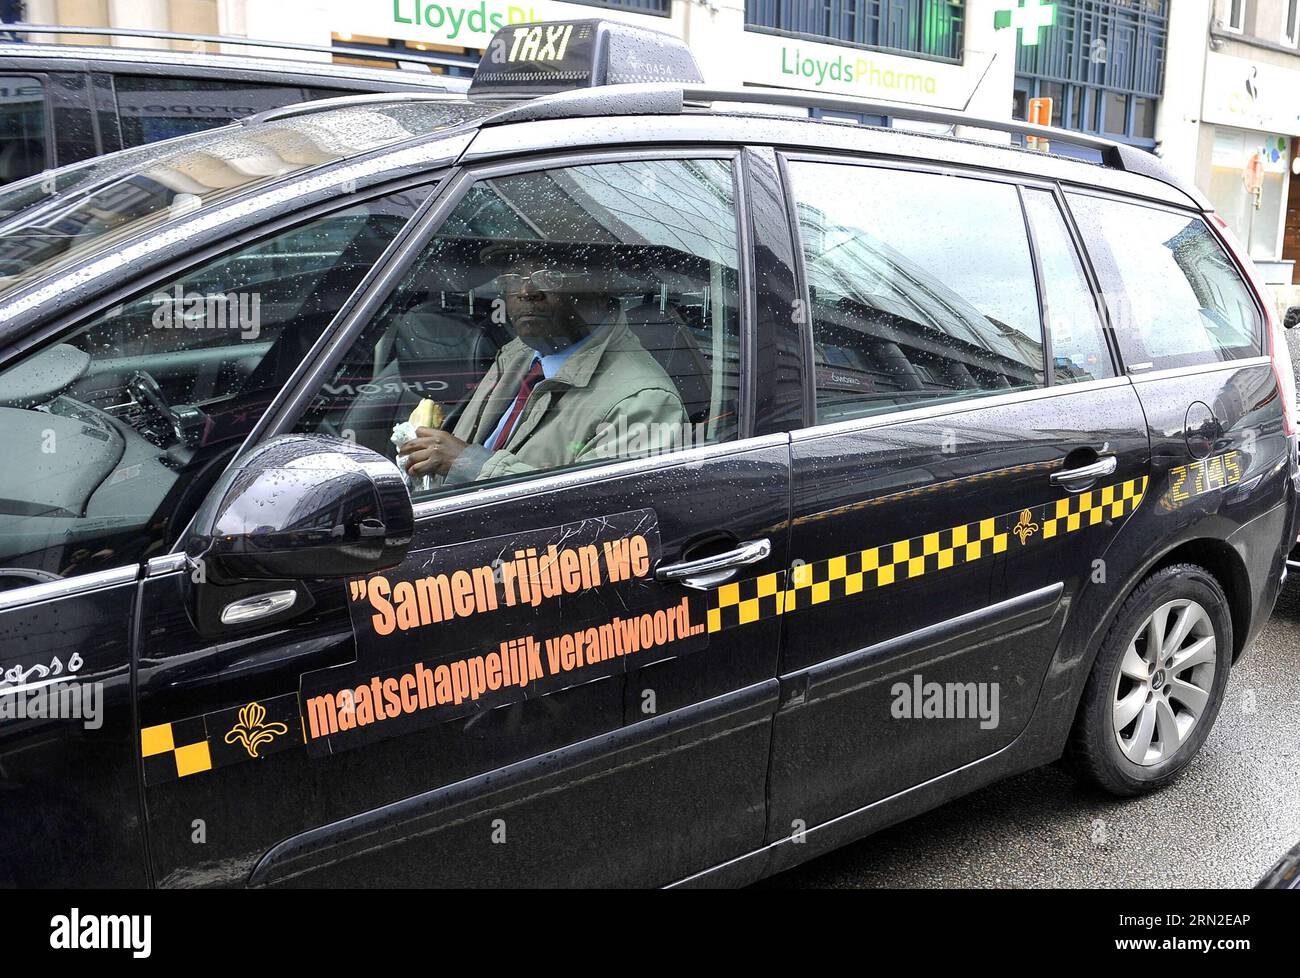 (150303) -- BRUXELLES, 3 marzo 2015 -- Un tassista pranza durante uno sciopero dei tassisti contro la società di car sharing online Uber in una strada di fronte alla sede centrale dell'UE a Bruxelles, capitale del Belgio, 3 marzo 2015. ) BELGIO-BRUXELLES-TAXI-STRIKE YexPingfan PUBLICATIONxNOTxINxCHN Bruxelles 3 marzo 2015 un autista di taxi pranza durante un taxi Drivers Strike Against Online Ride Sharing Company in una strada di fronte alla sede centrale dell'UE a Bruxelles capitale del Belgio 3 marzo 2015 Belgio Brussels taxi Strike PUBLICATIONxNOTxINxCHN Foto Stock